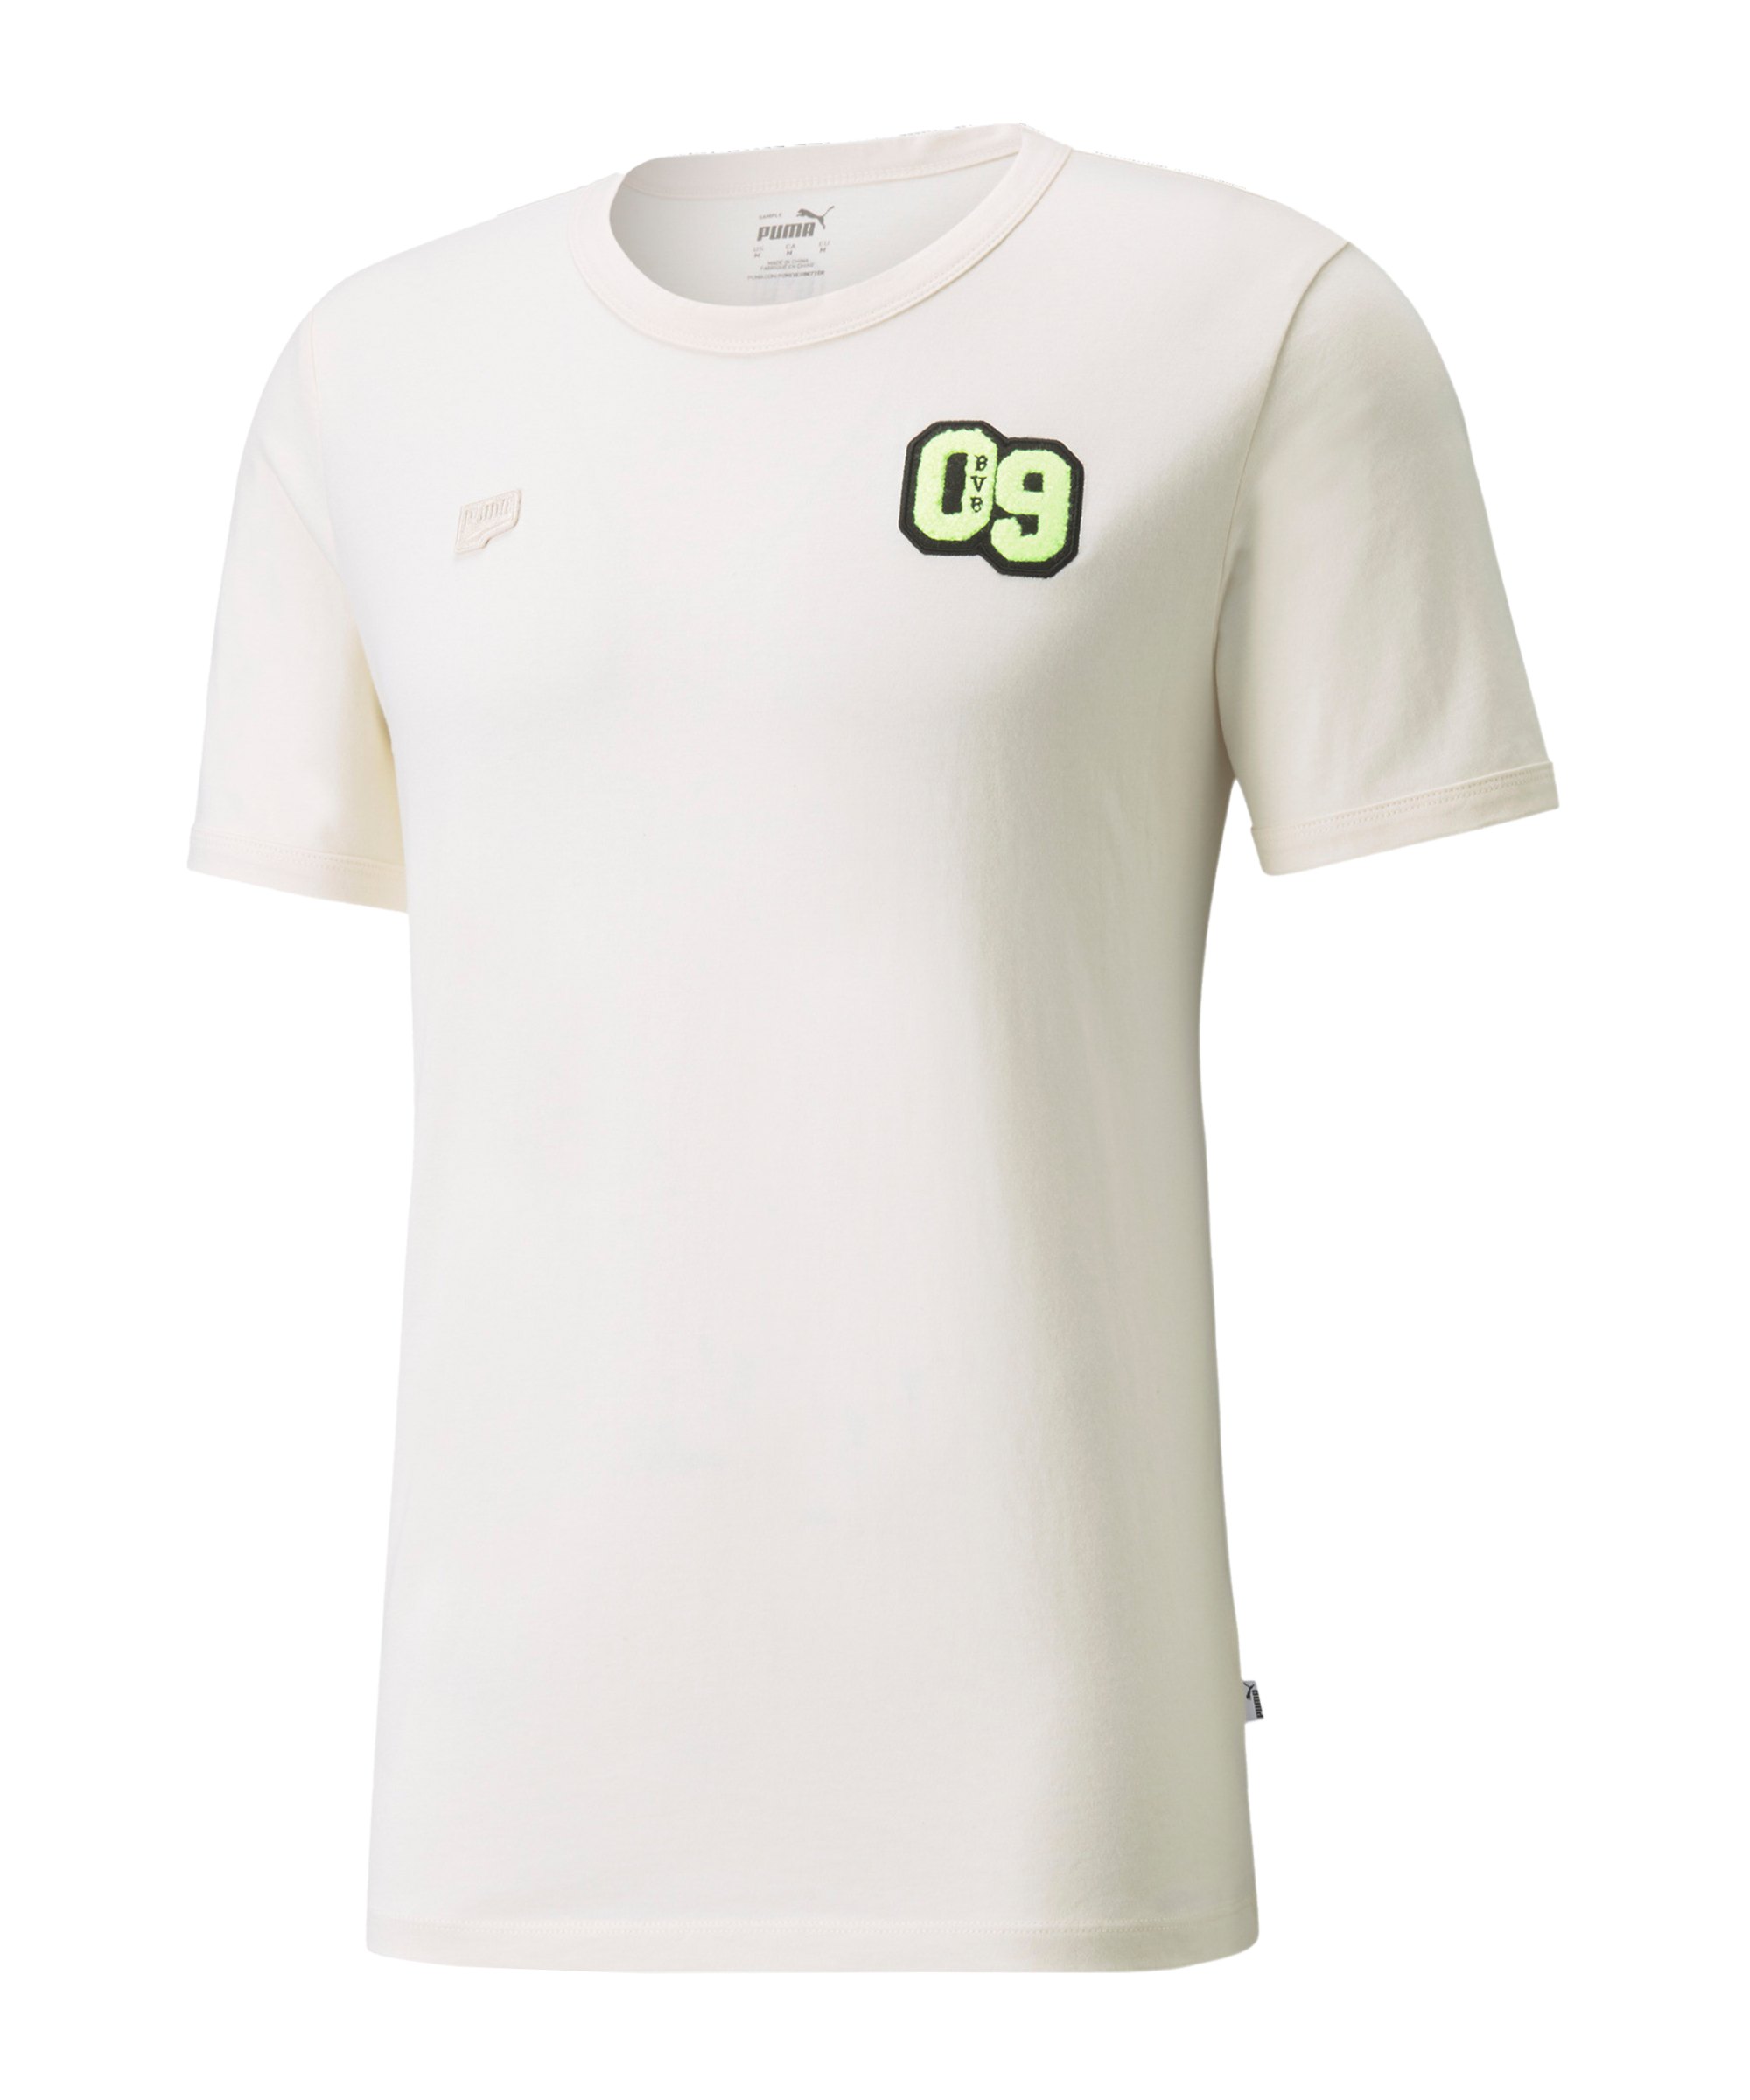 PUMA BVB Dortmund FtblFeat T-Shirt Weiss F02 - weiss